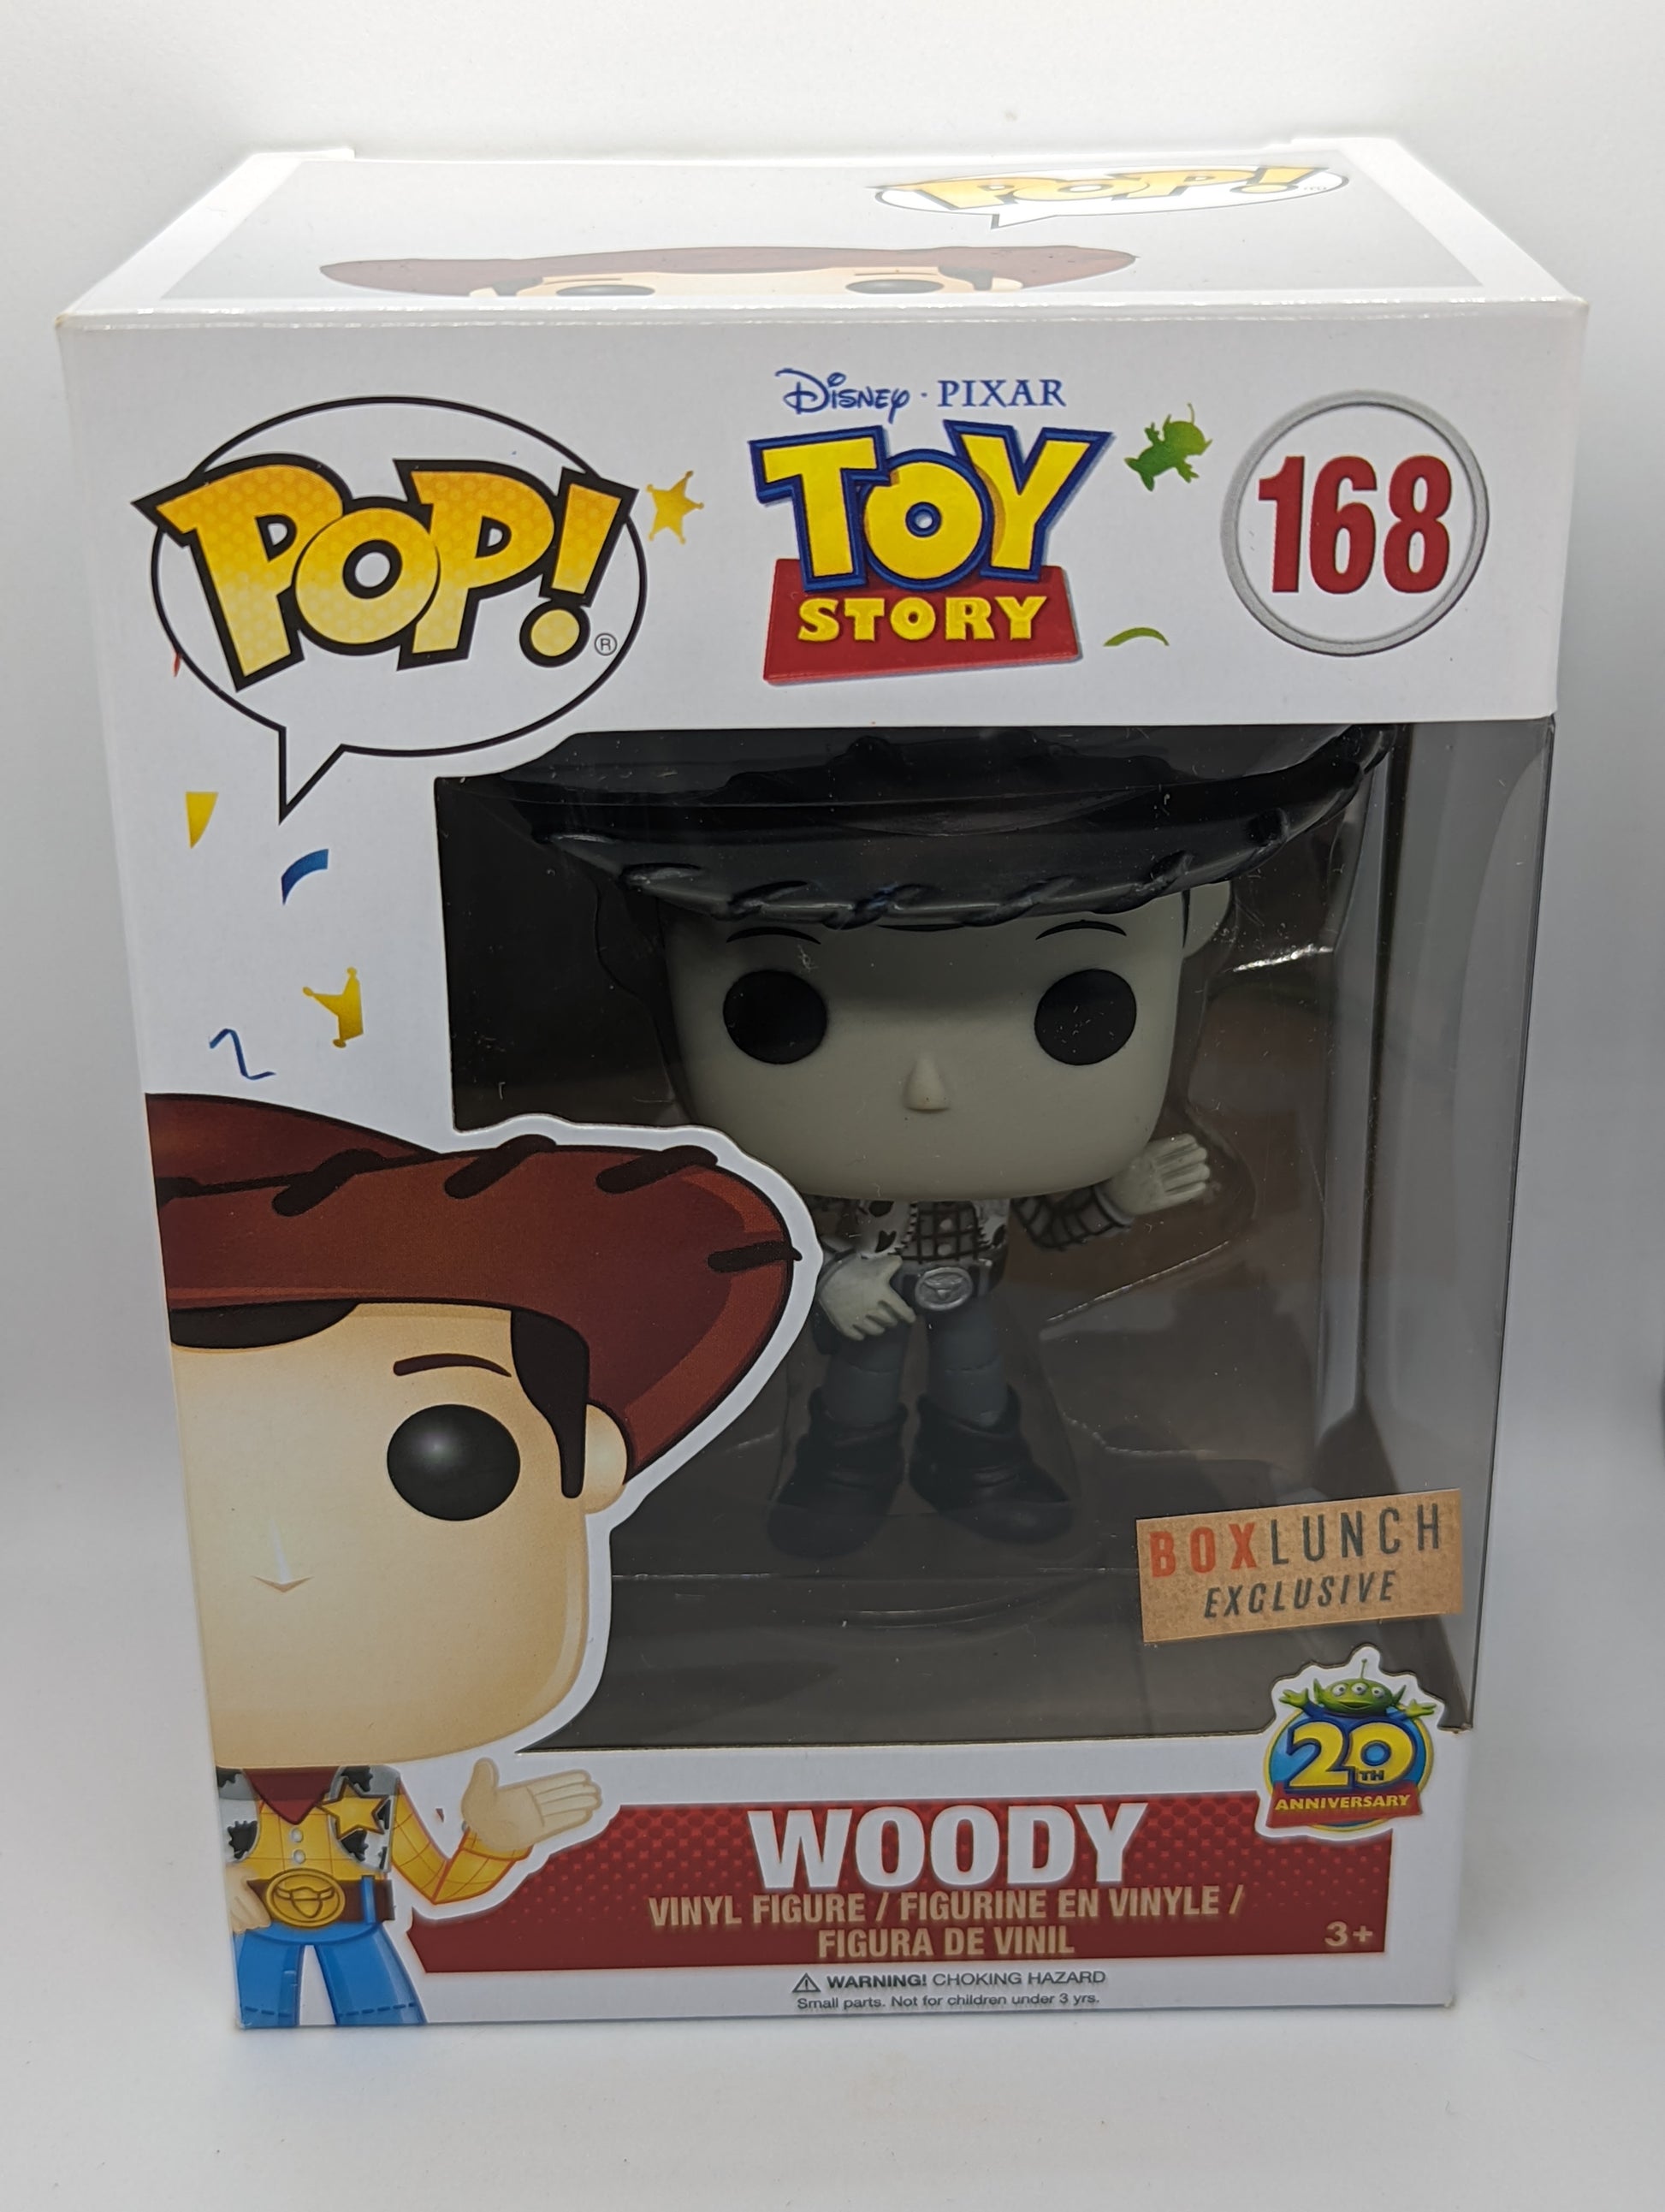 Figurine Funko POP Woody (168) Toy Story Disney